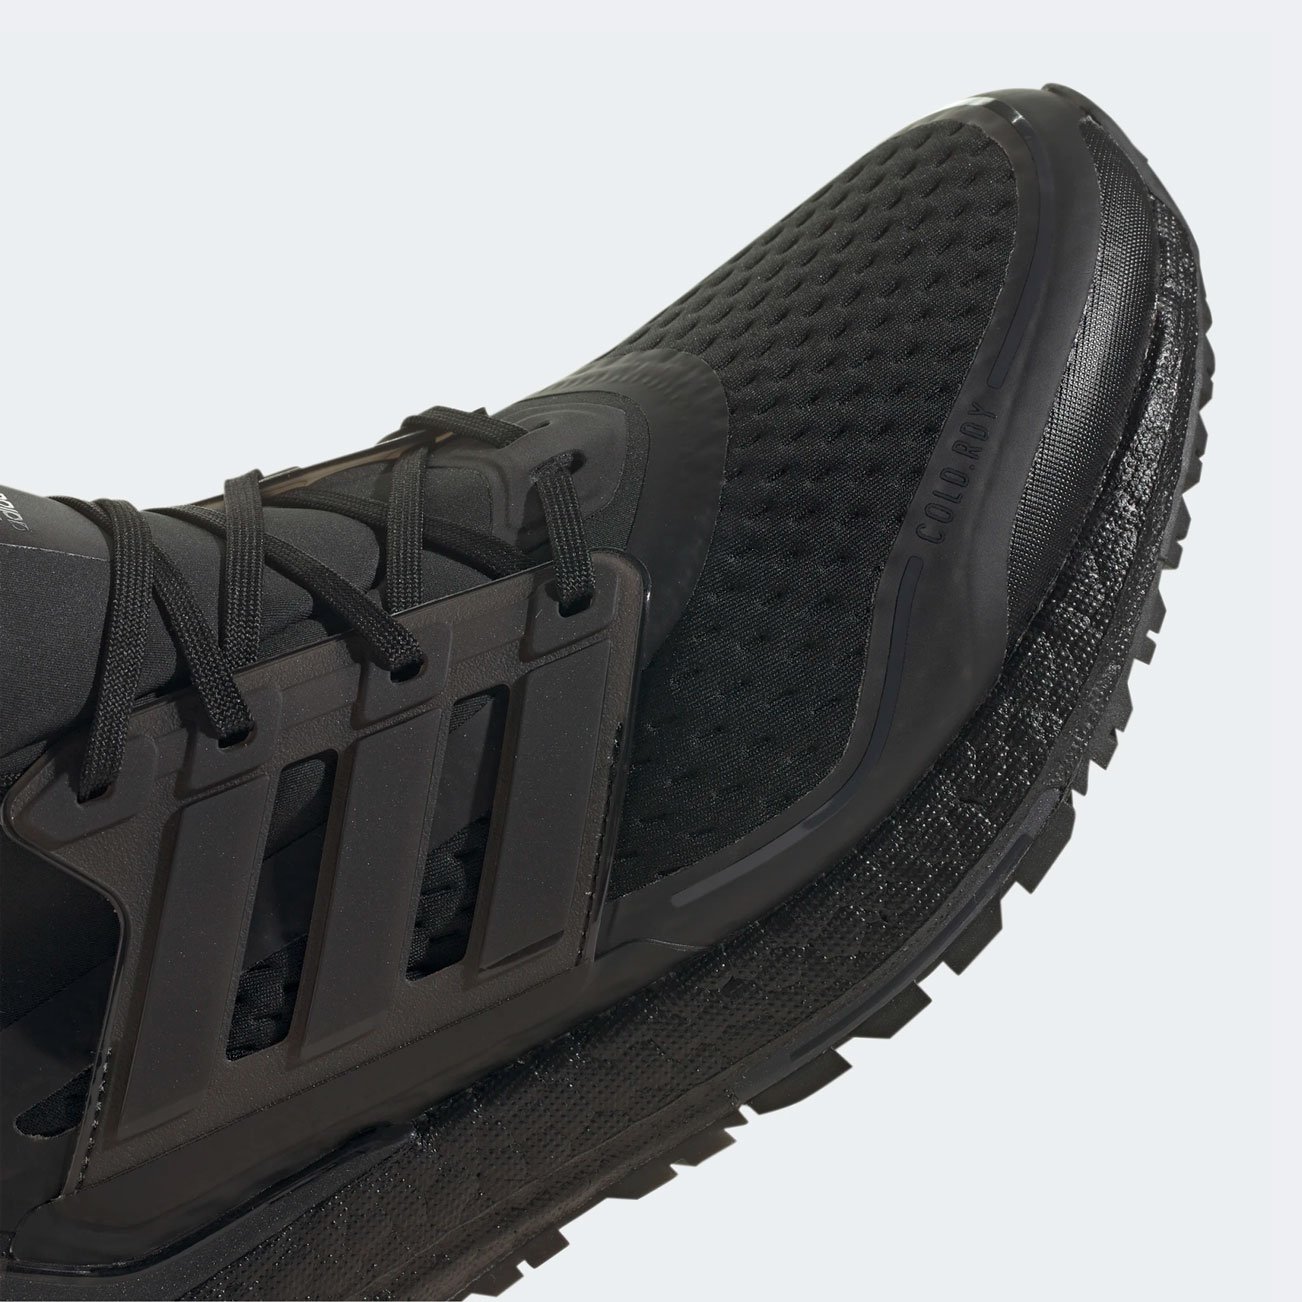 Кроссовки для бега adidas Ultraboost 21